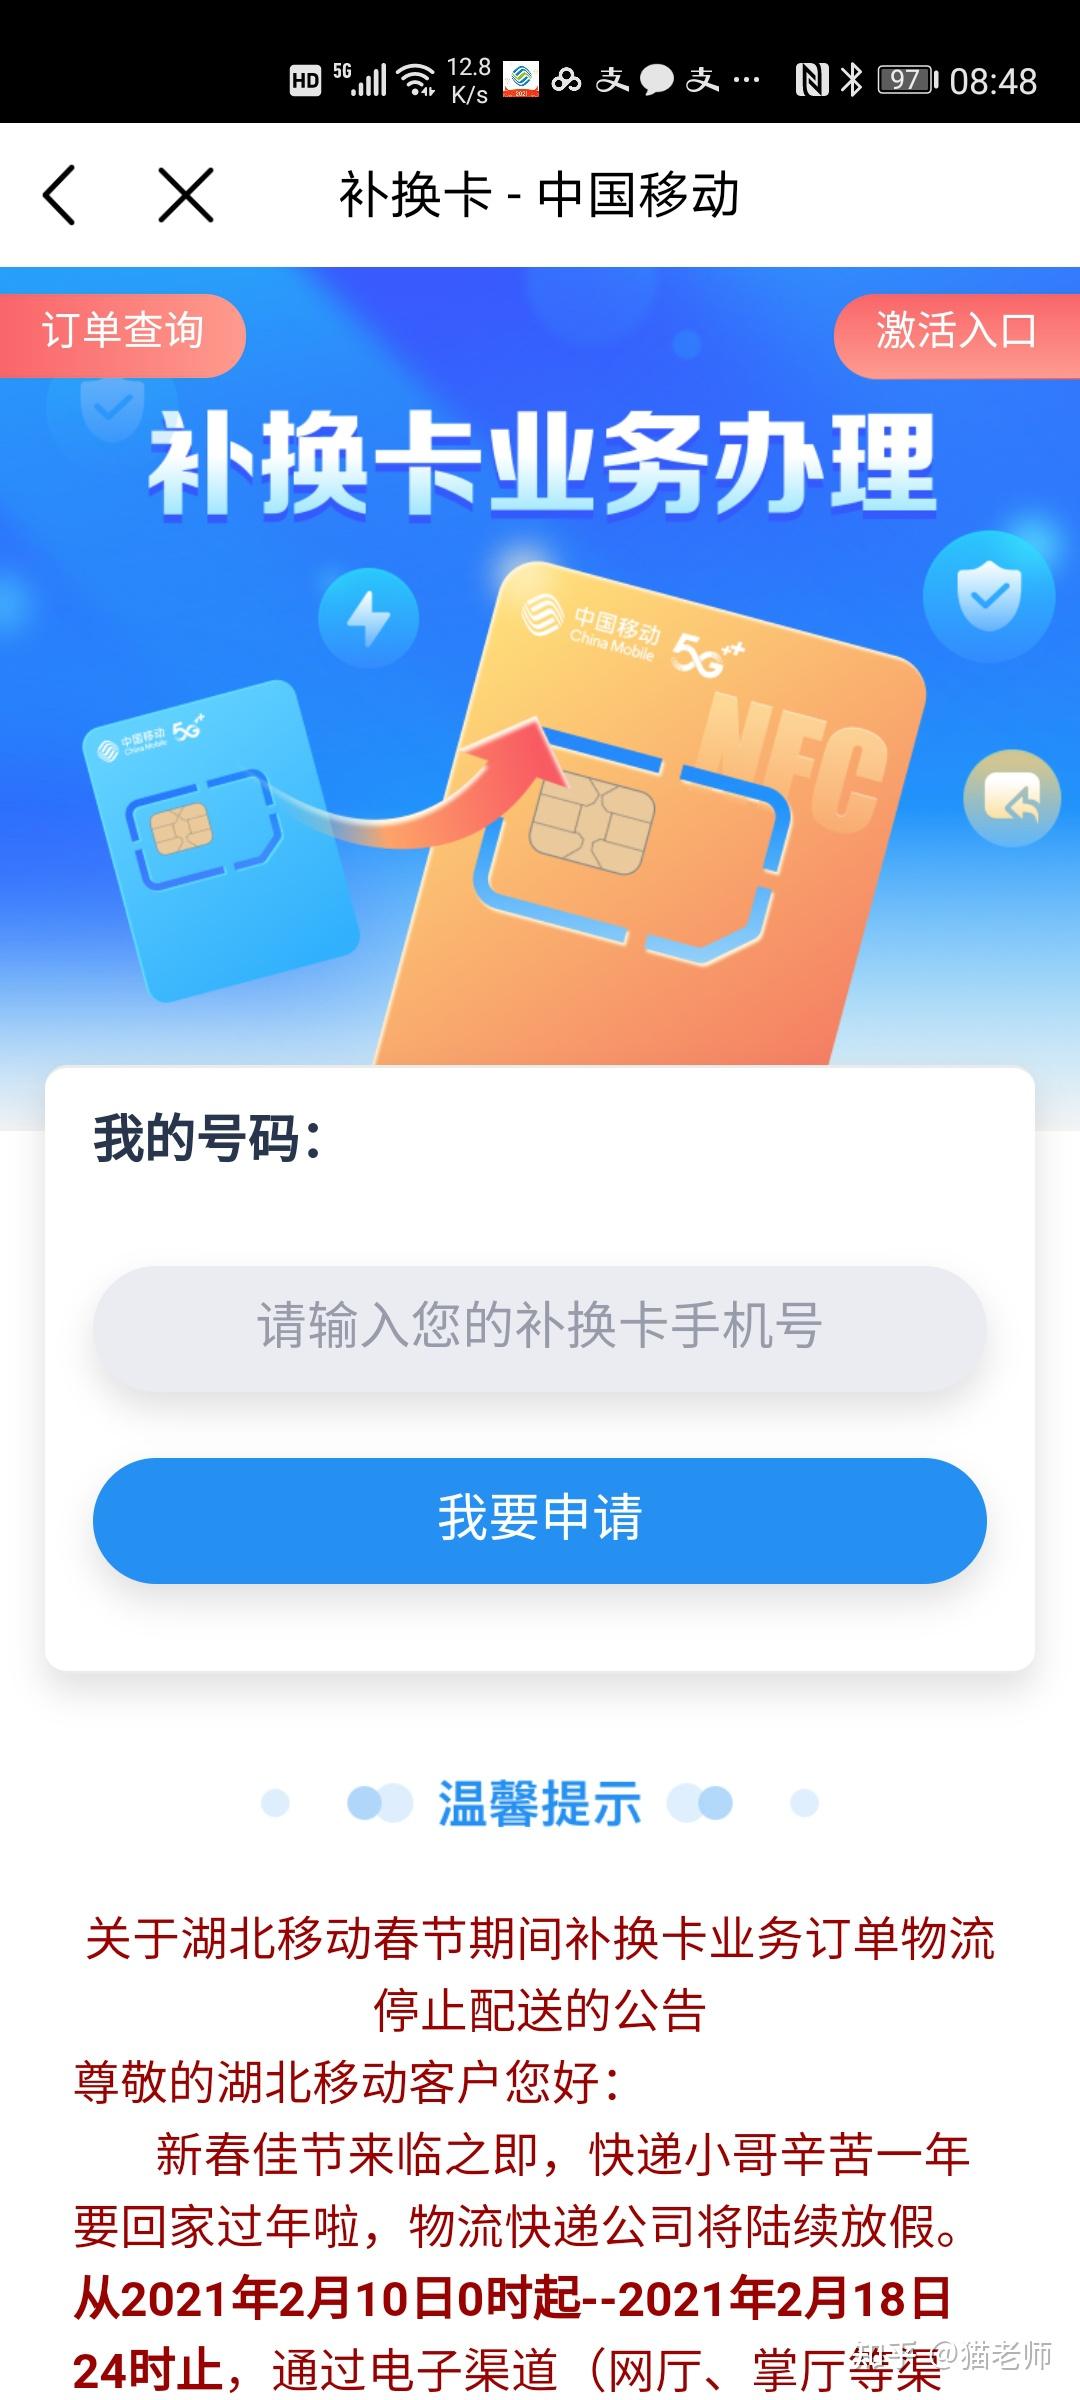 中国移动网上办理补卡业务流程是怎样的啊?